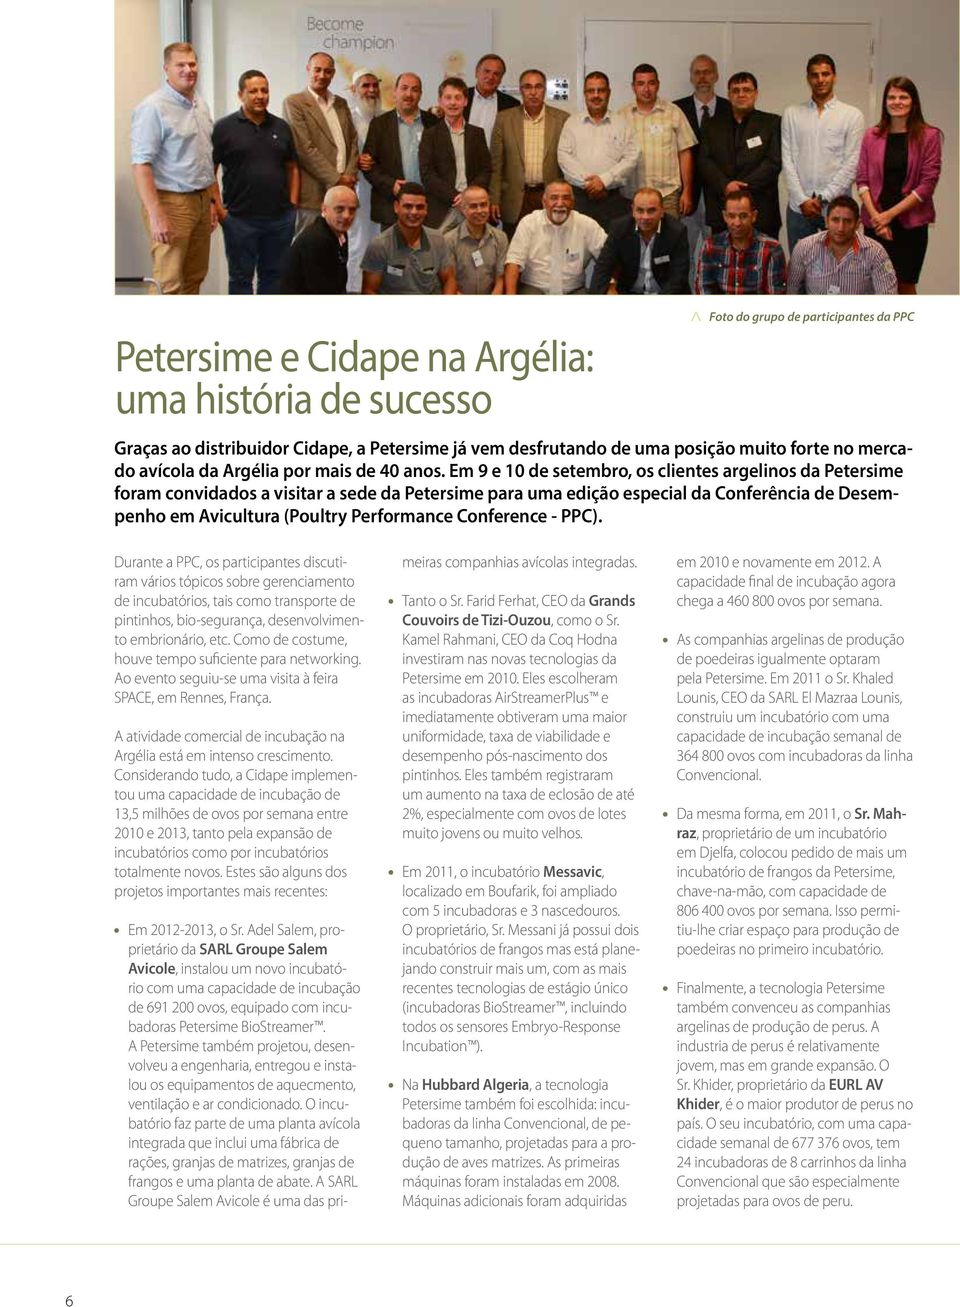 Em 9 e 10 de setembro, os clientes argelinos da Petersime foram convidados a visitar a sede da Petersime para uma edição especial da Conferência de Desempenho em Avicultura (Poultry Performance